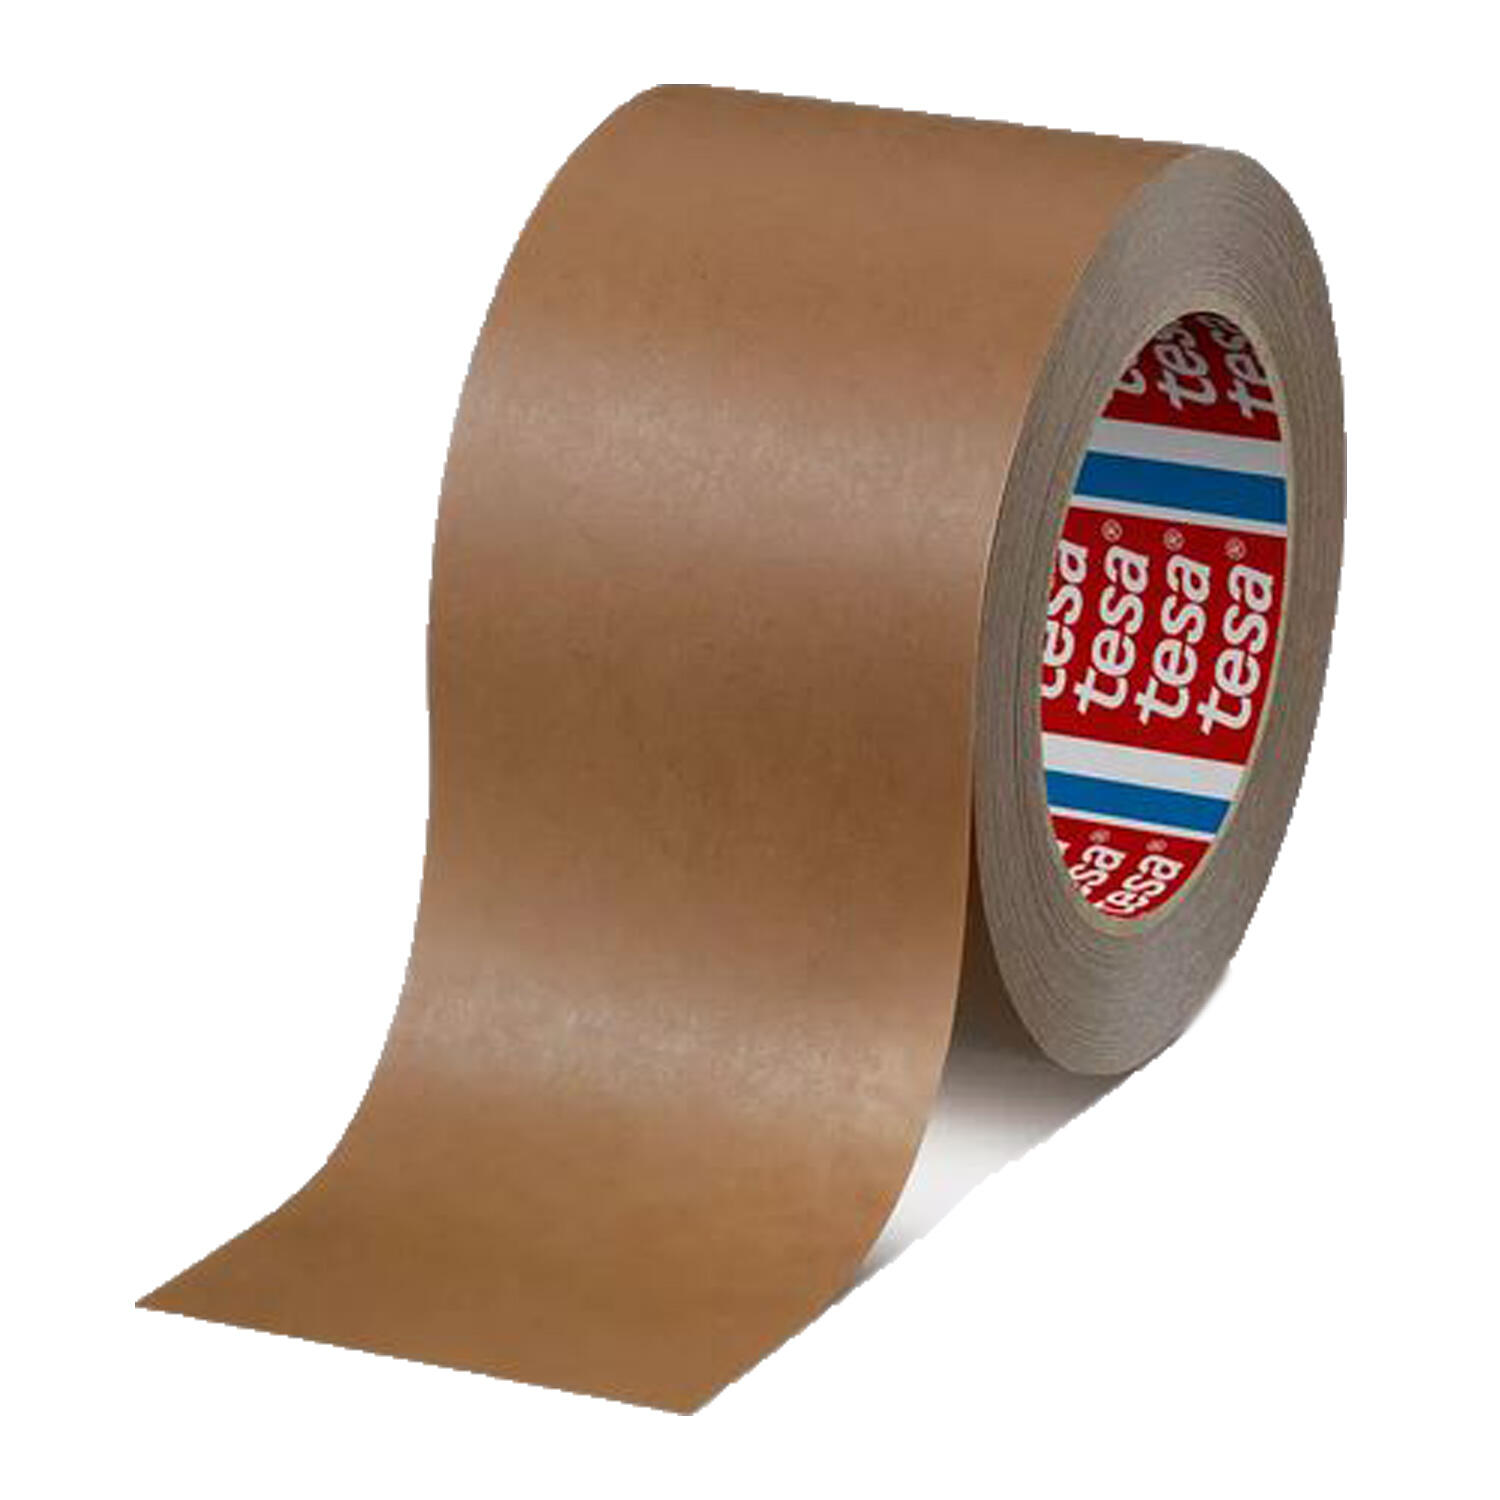 TESA Papierklebeband tesapack 4313 PV10 nachhaltig 75mm x 50m, braun